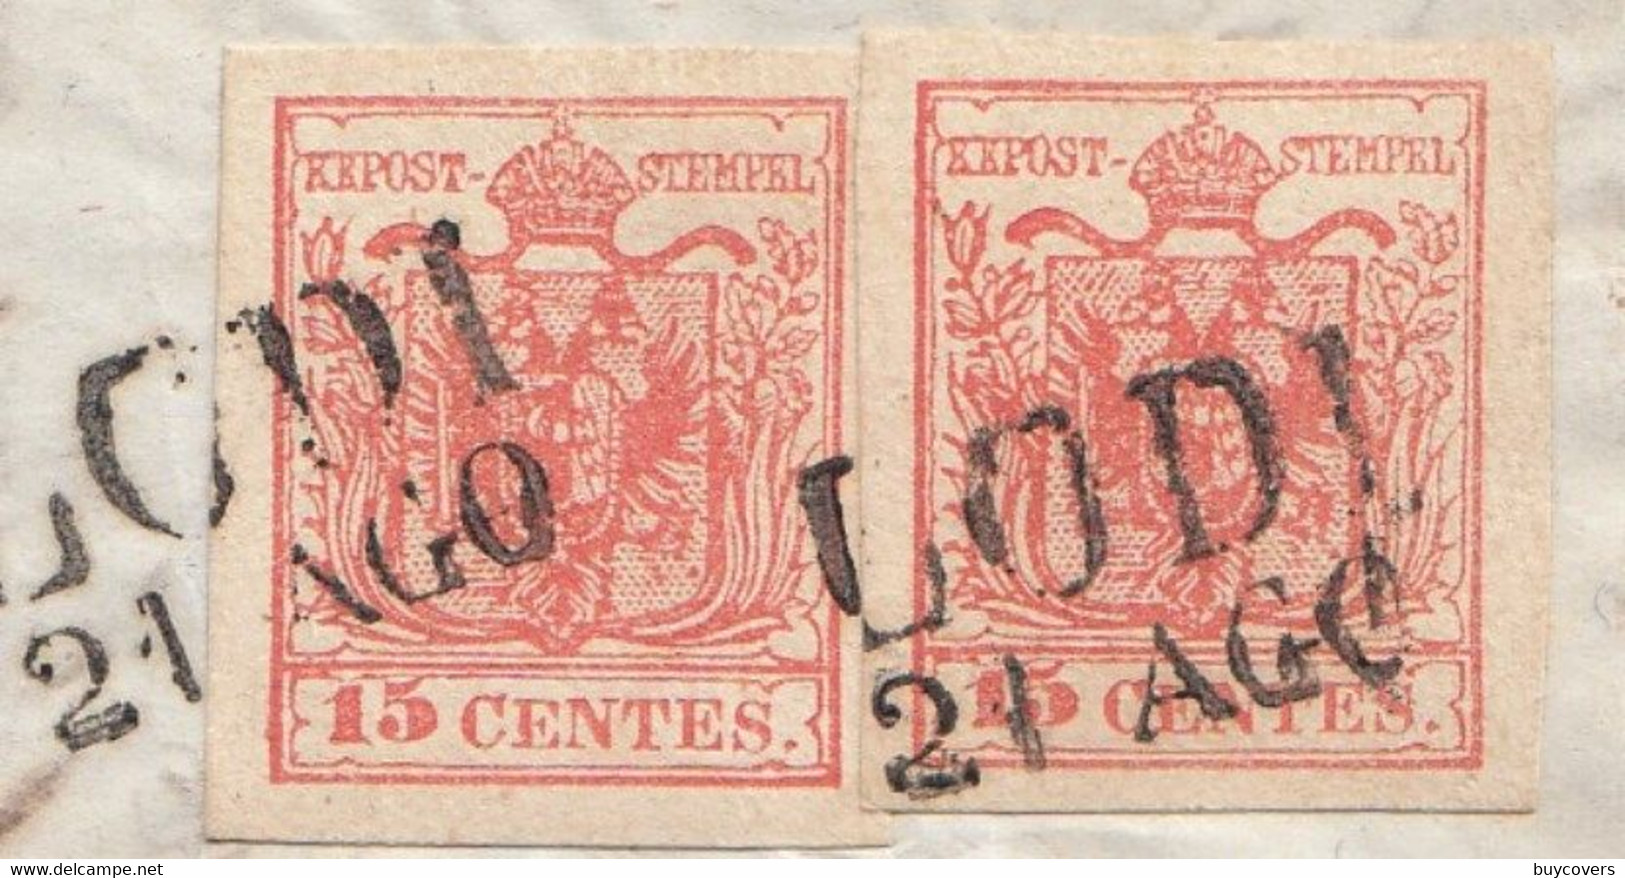 LV168 - 21 Agosto 1855 - Lettera Con Testo Da Lodi A Artogne (BG)  Con 2 Valori Di 15 Cent. Rosso 3° Tipo .Leggi... - Lombardy-Venetia